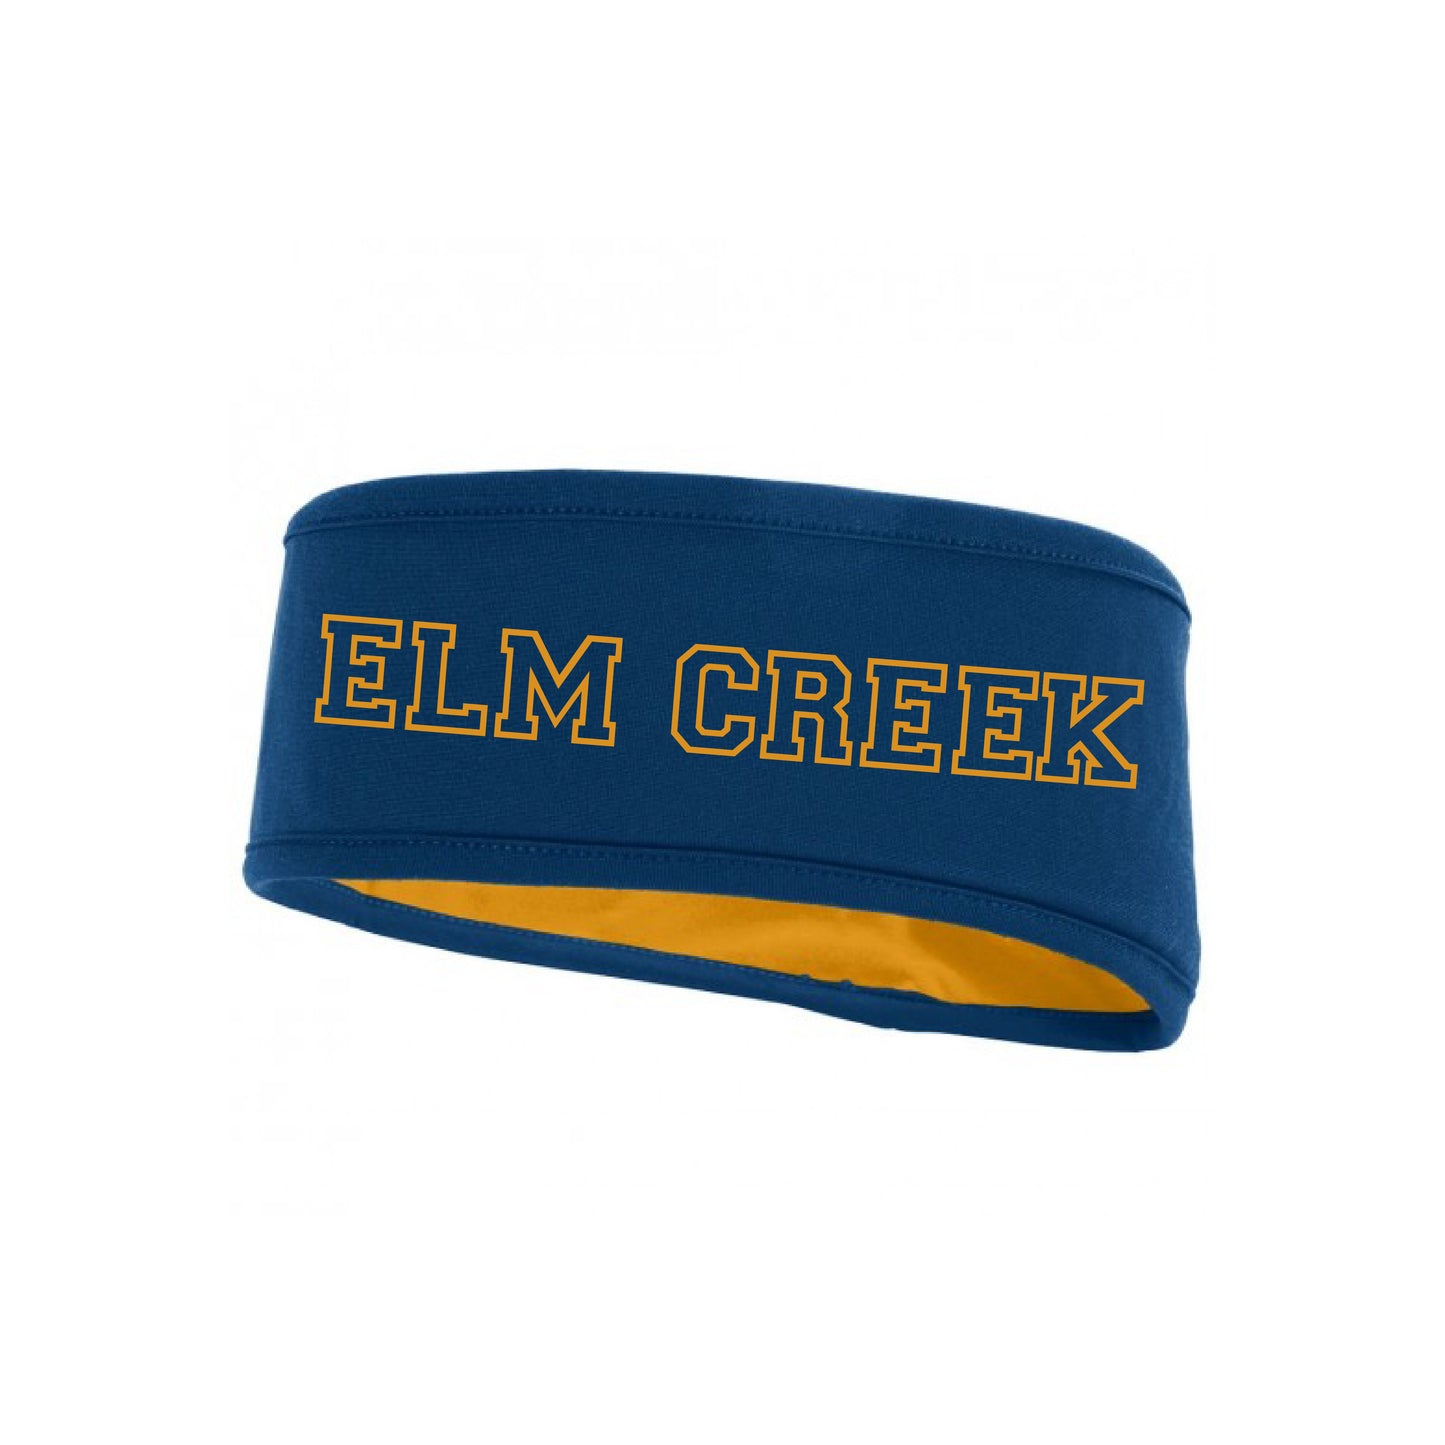 Elm Creek | Augusta Sportswear Reversible Headband